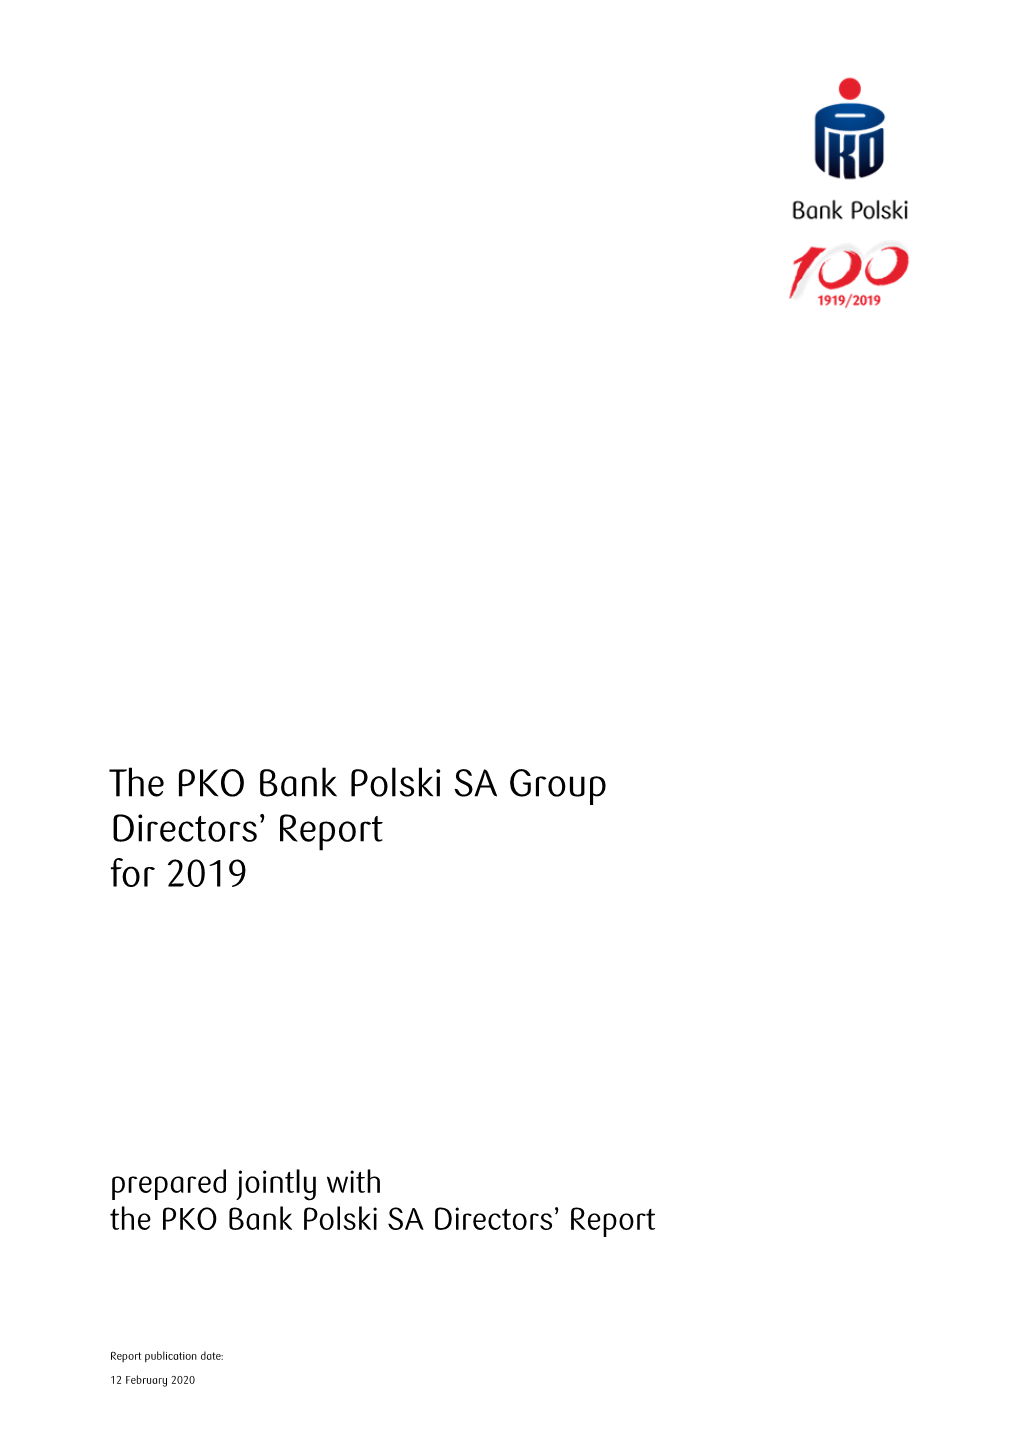 The PKO Bank Polski SA Group Directors' Report for 2019